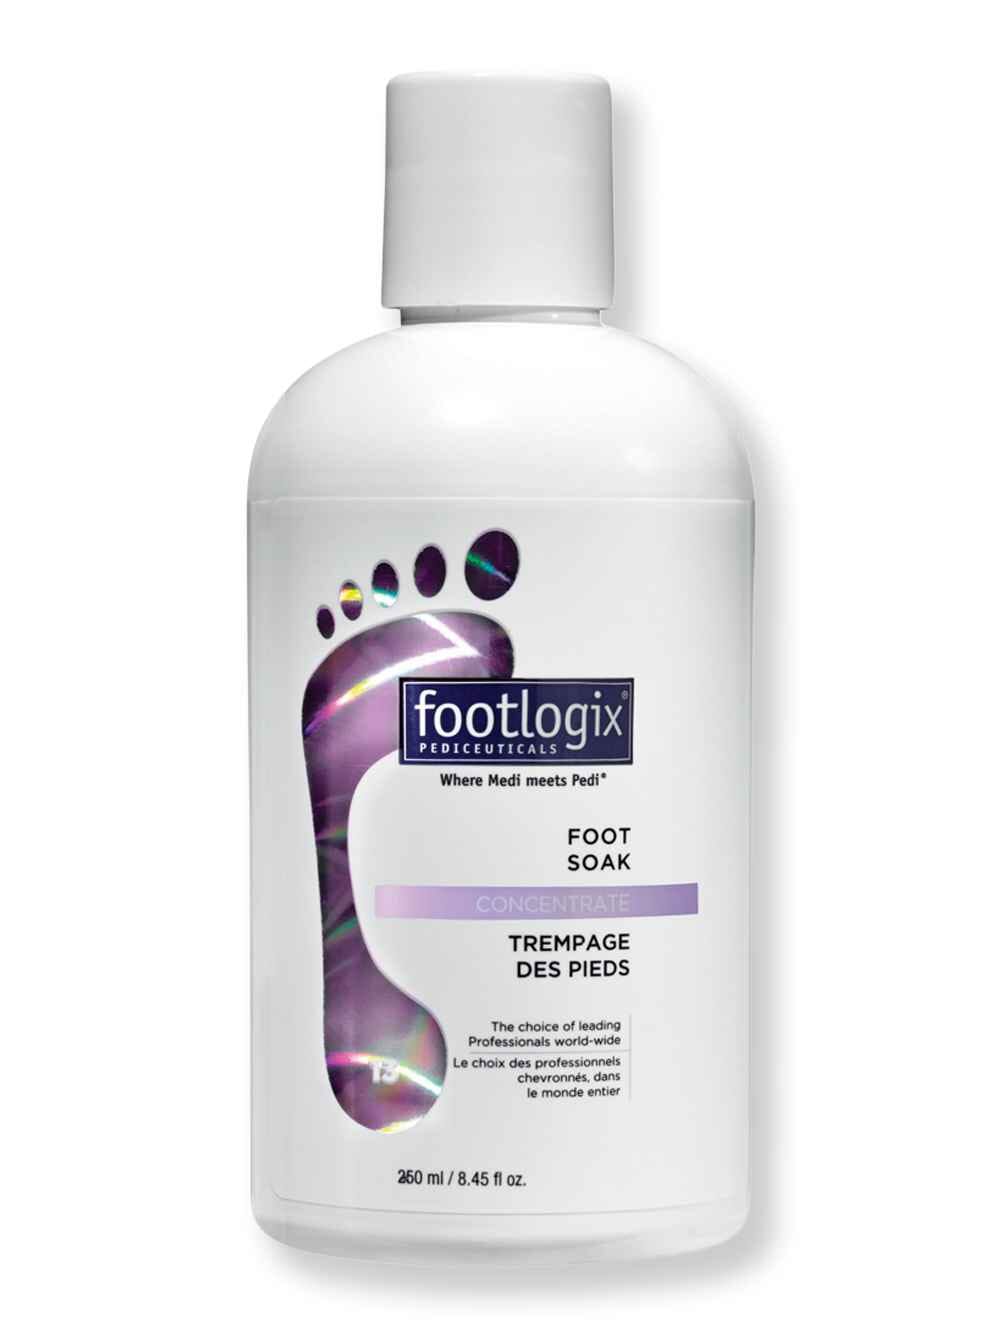 Footlogix Footlogix Foot Soak 8.45 fl oz250 ml Foot Creams & Treatments 